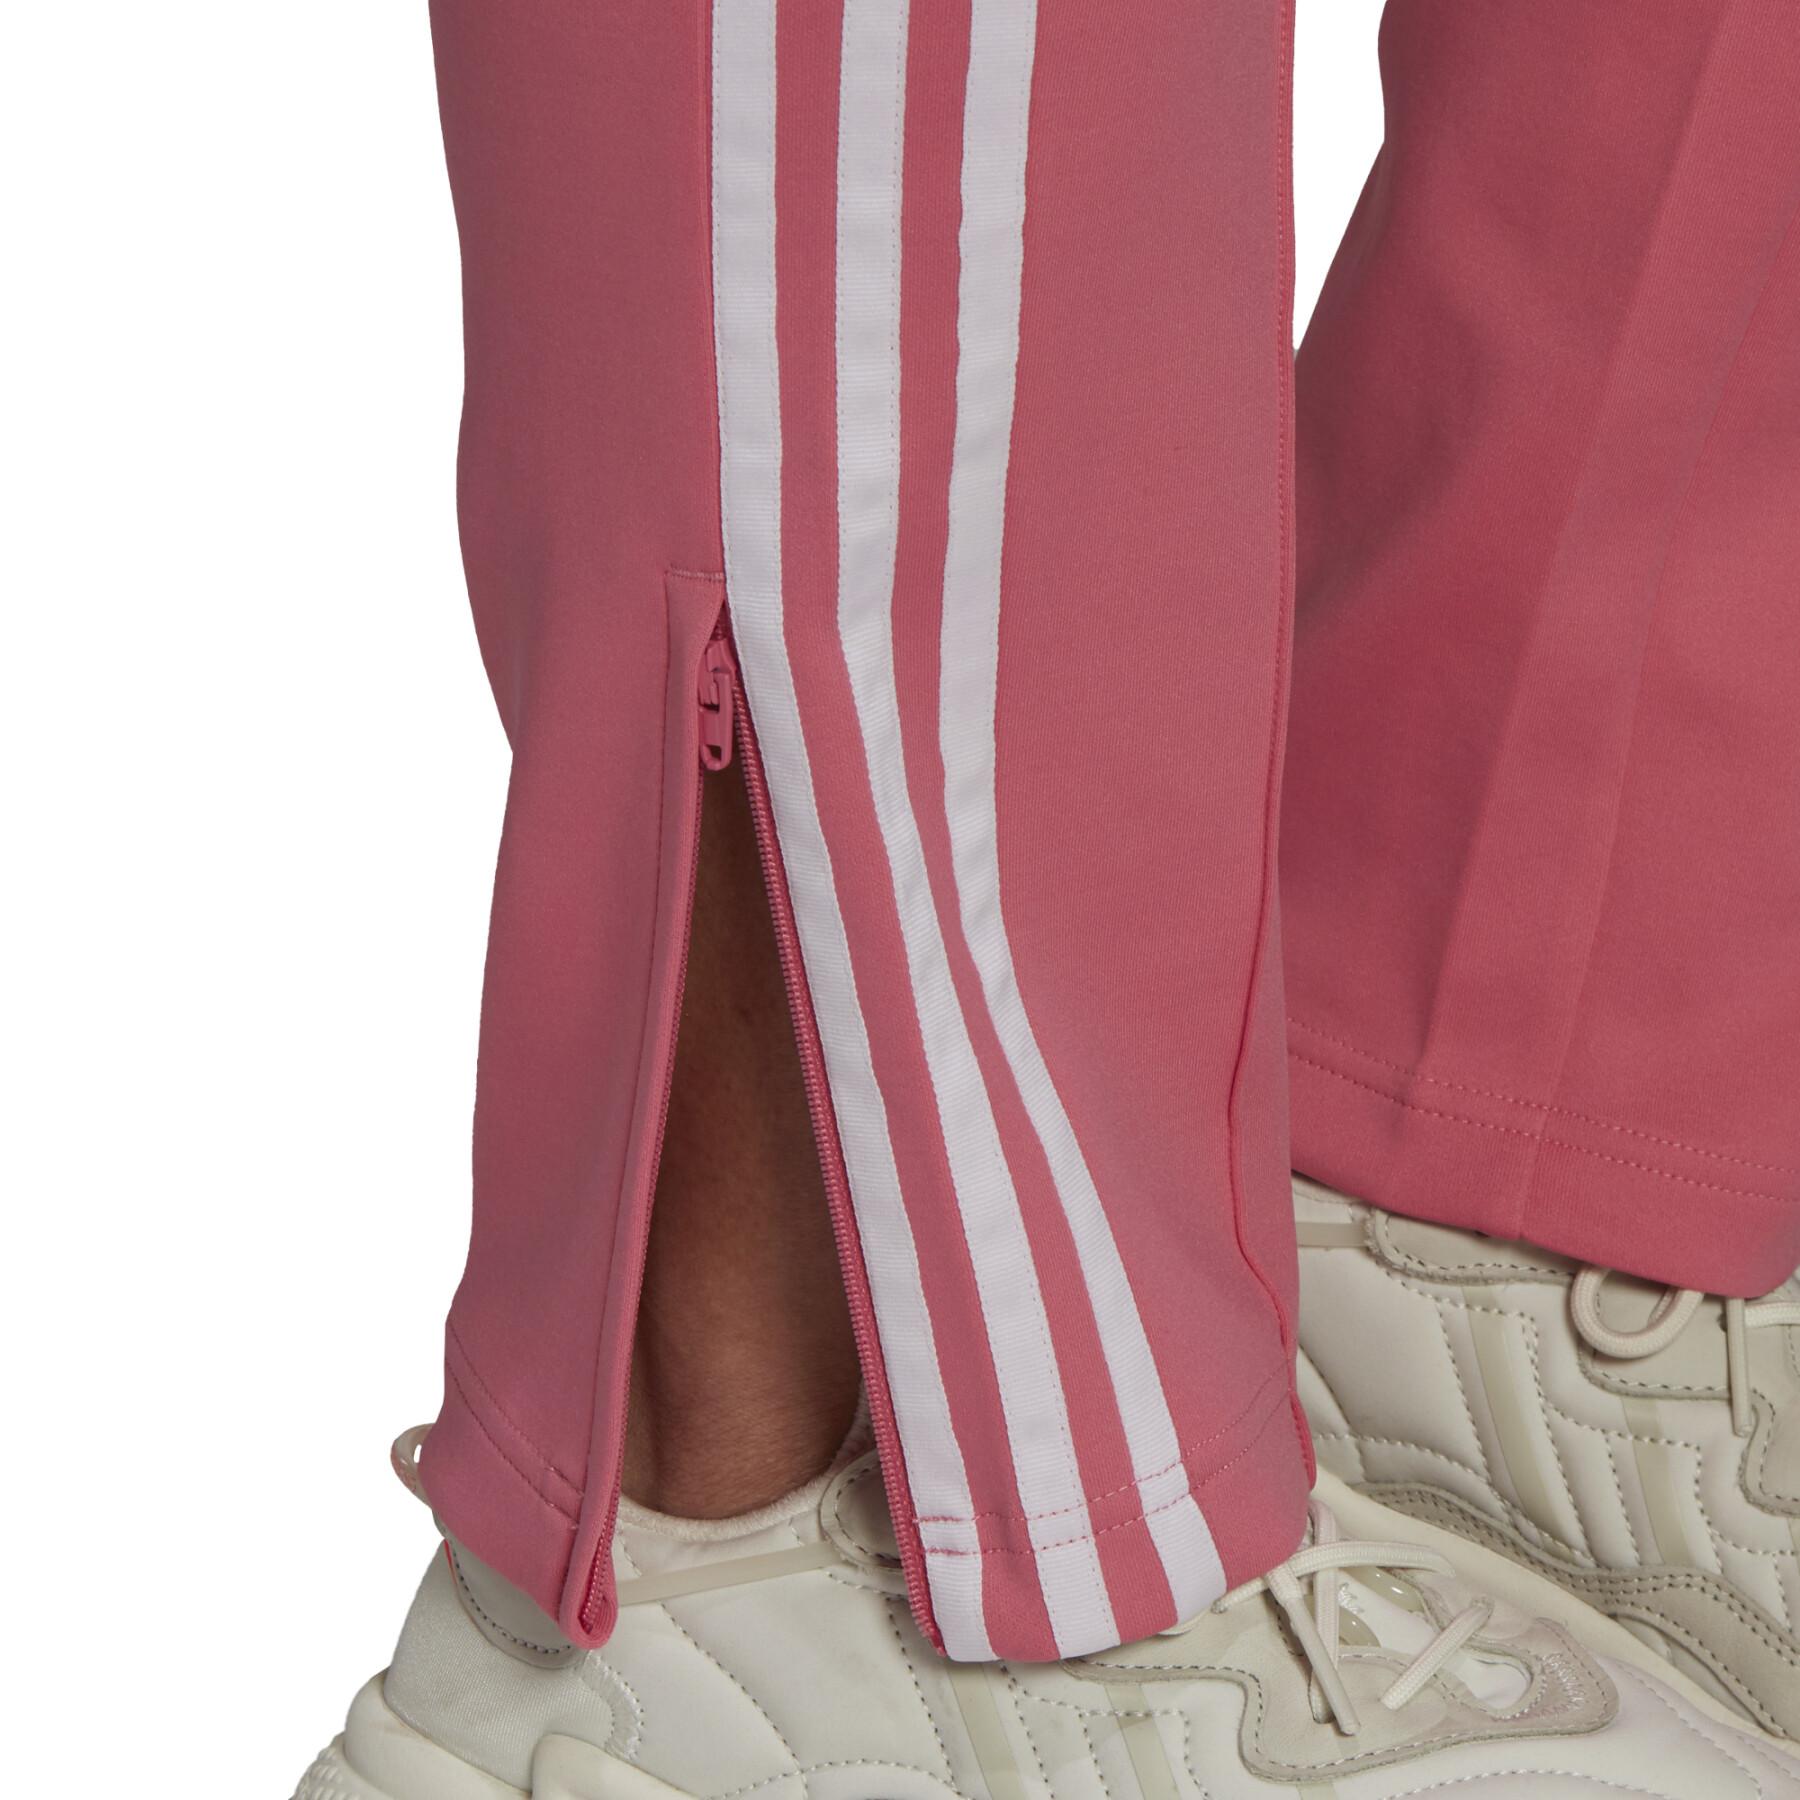 Women's large size sweatpants adidas Originals Primeblue SST